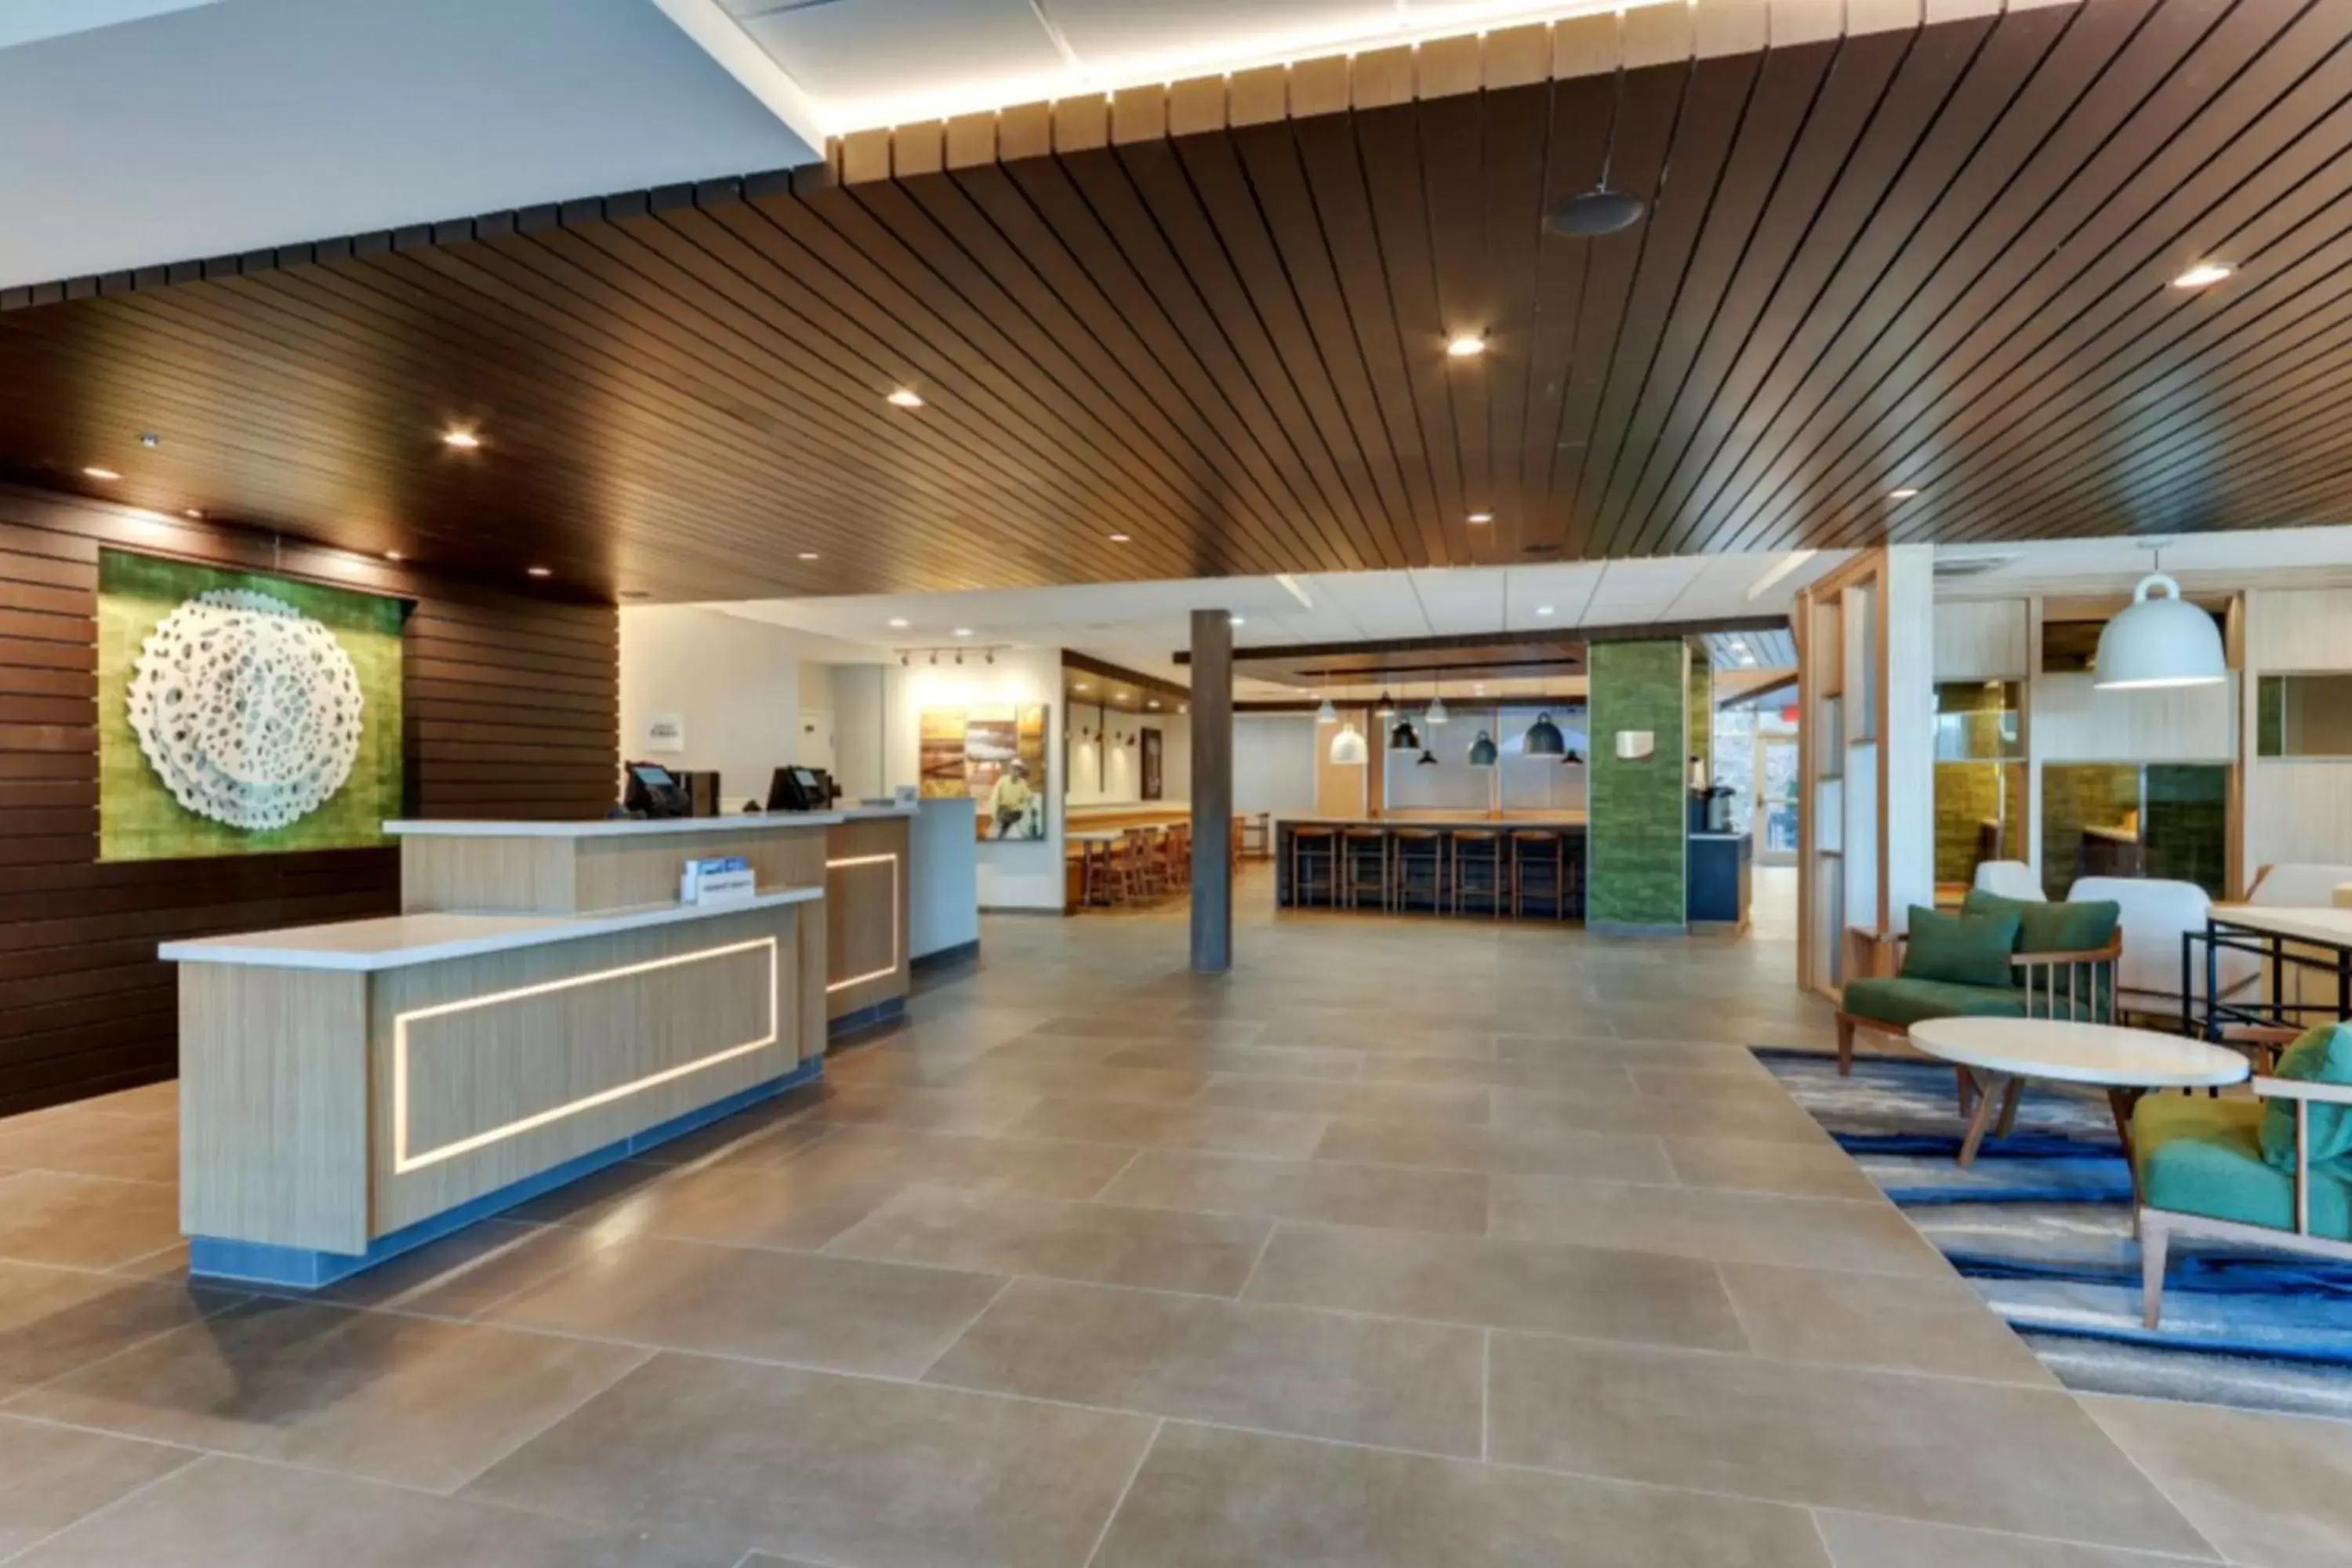 Lobby or reception, Lobby/Reception in Fairfield by Marriott Inn & Suites Dalton